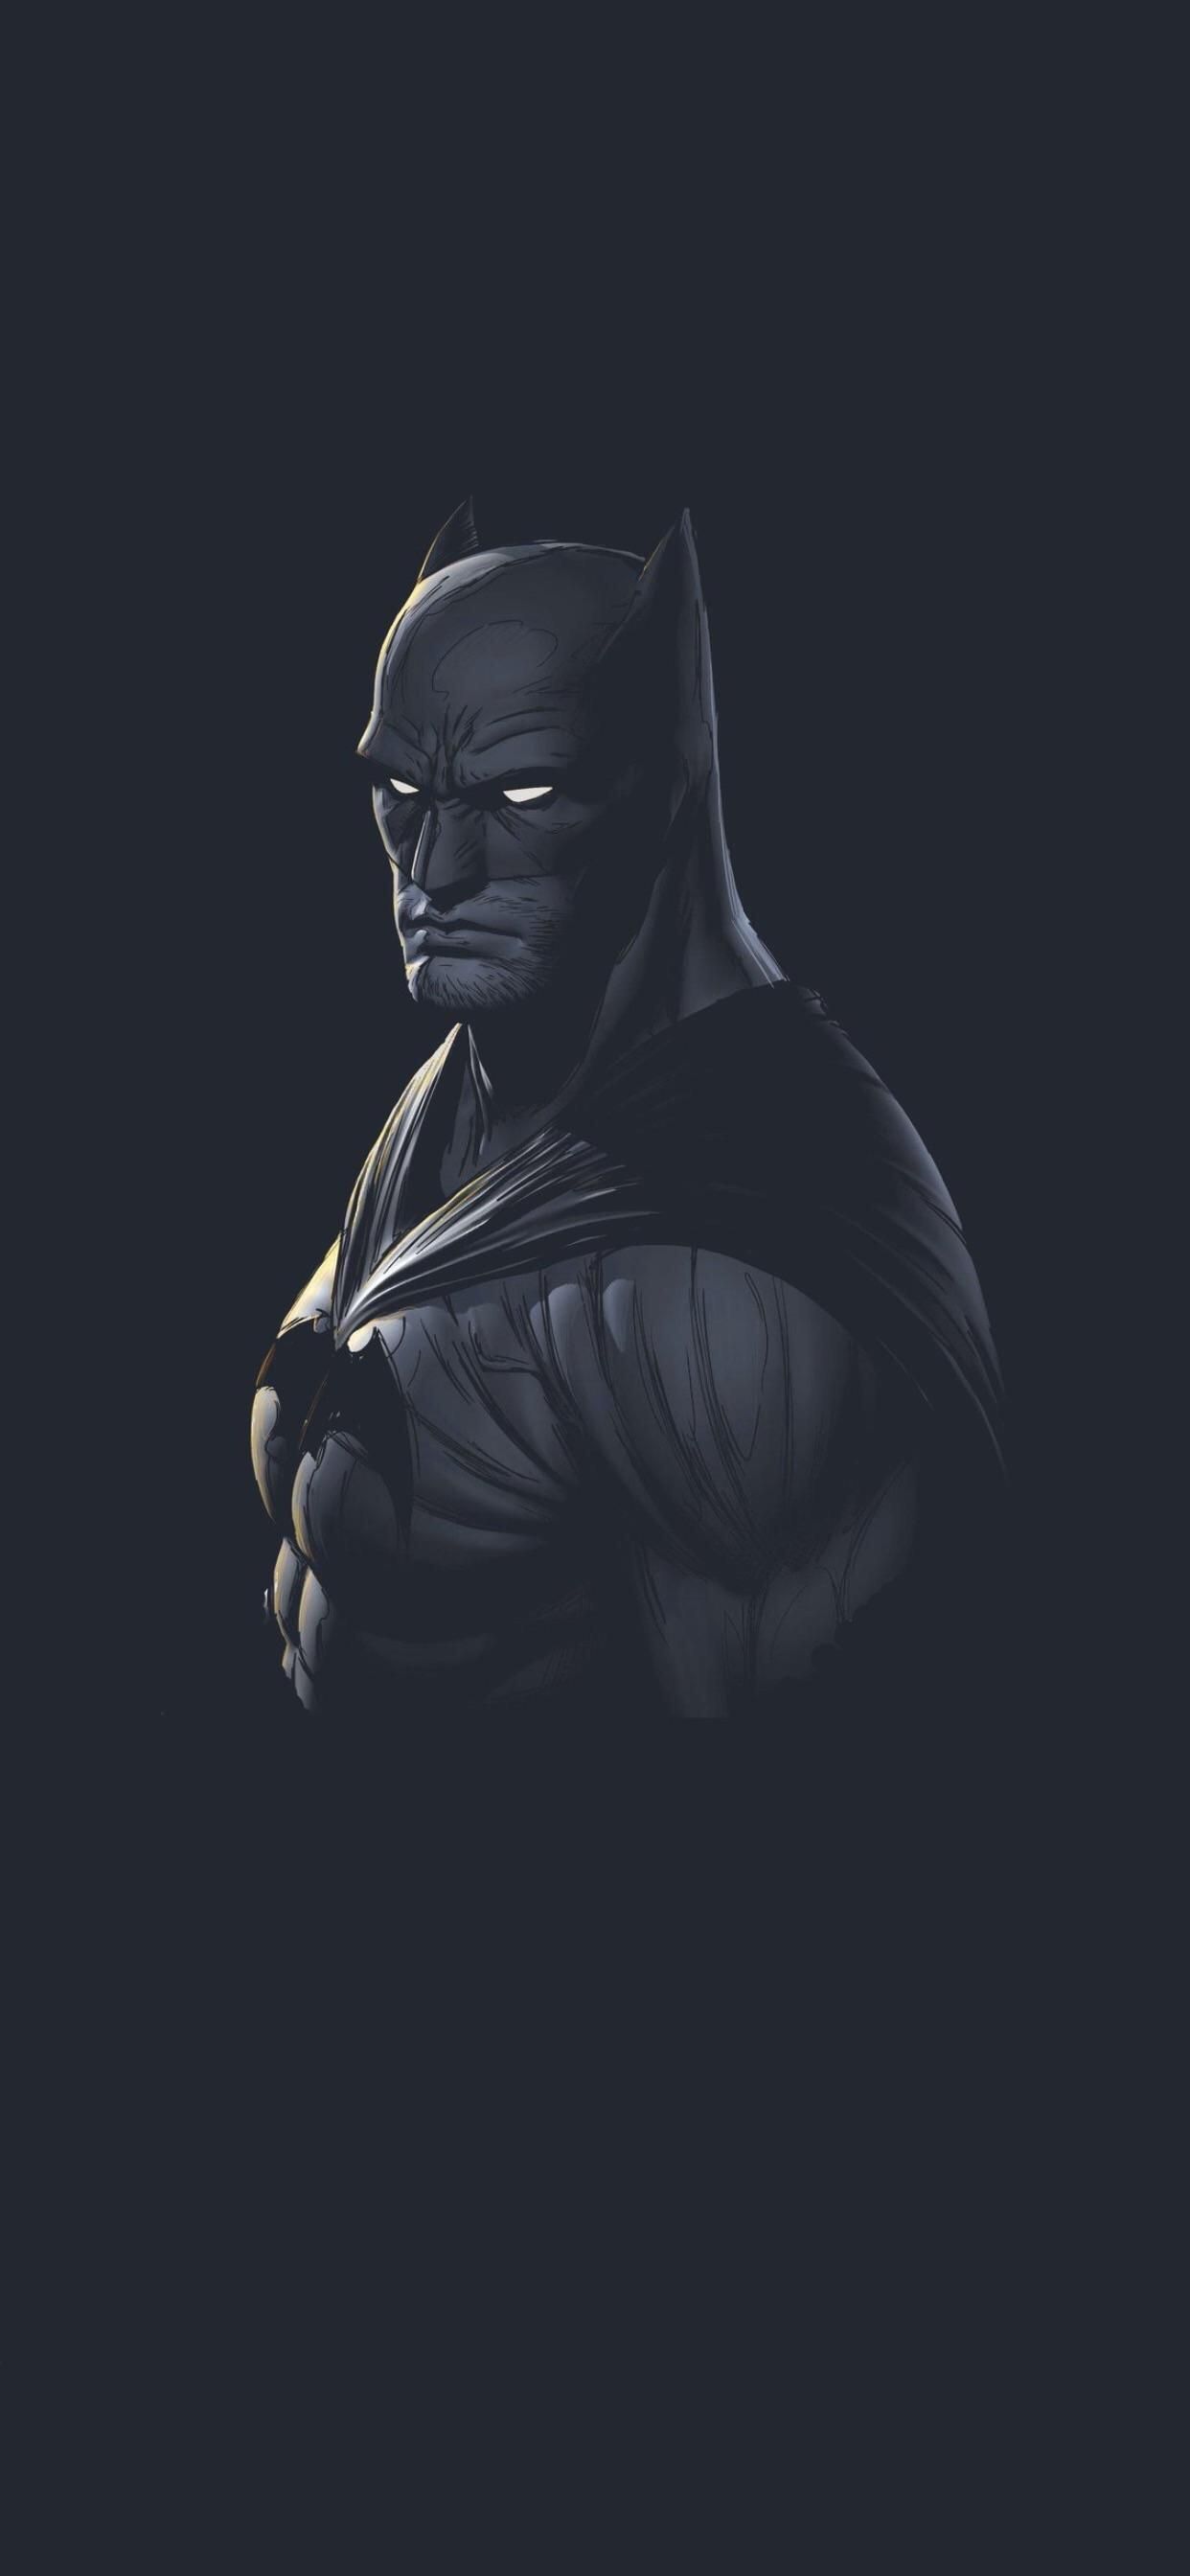 Batman Wallpaper iPhone - اروردز